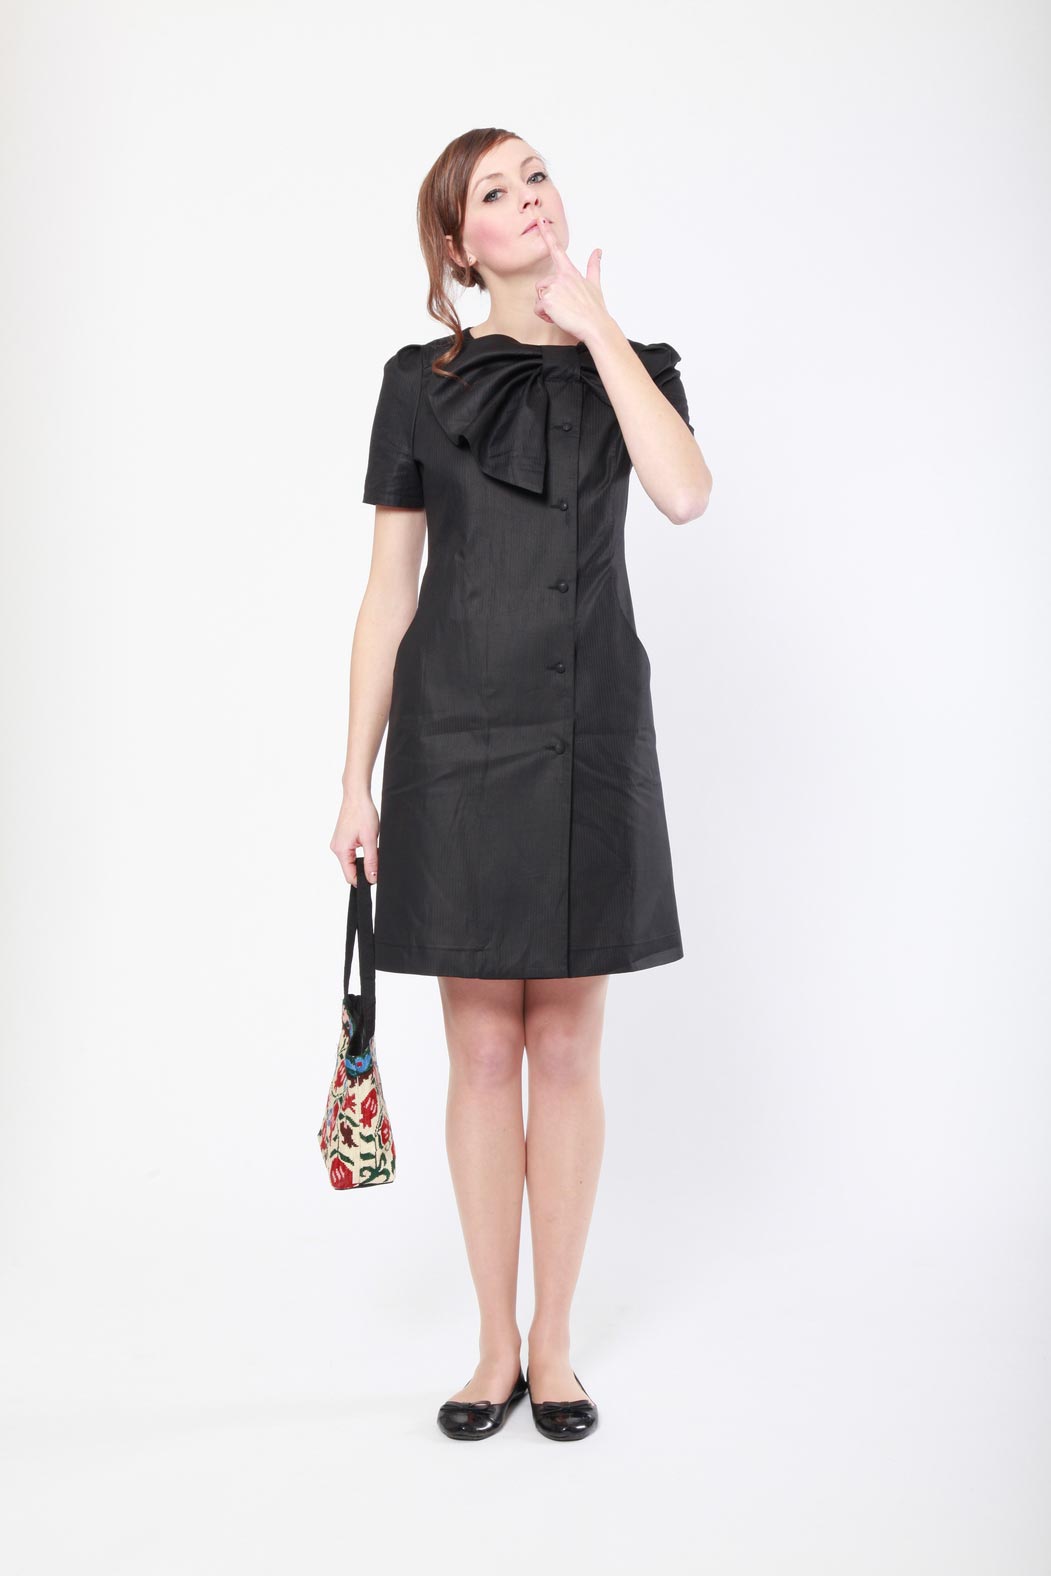 madeva collection printemps ete 2013 robe cintree grand noeud devant boutonnage cote coton viscose noir anemone